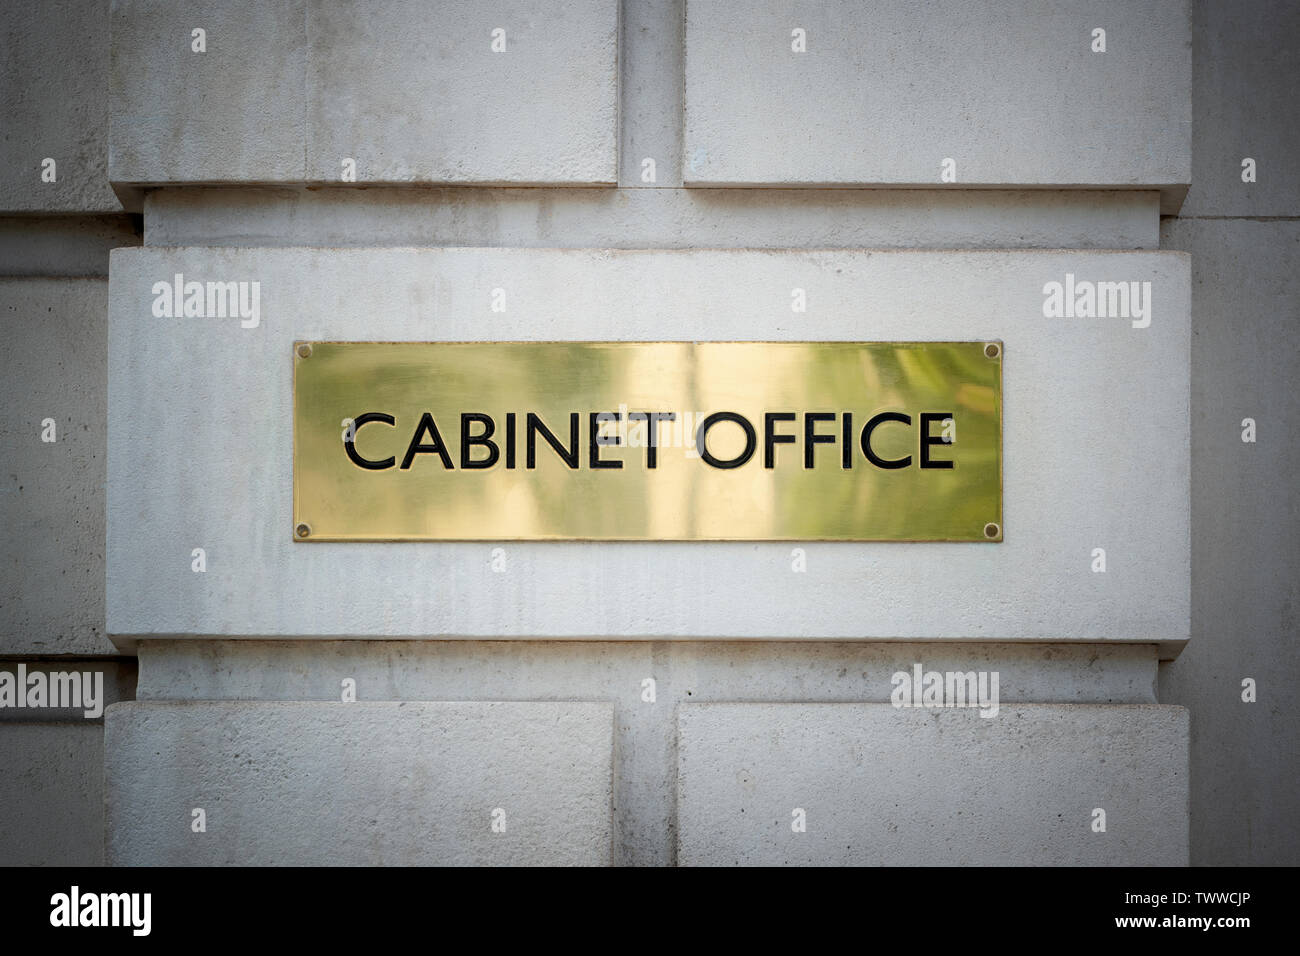 Beschilderung für das Cabinet Office Gebäude auf Whitehall in London, Großbritannien. Stockfoto